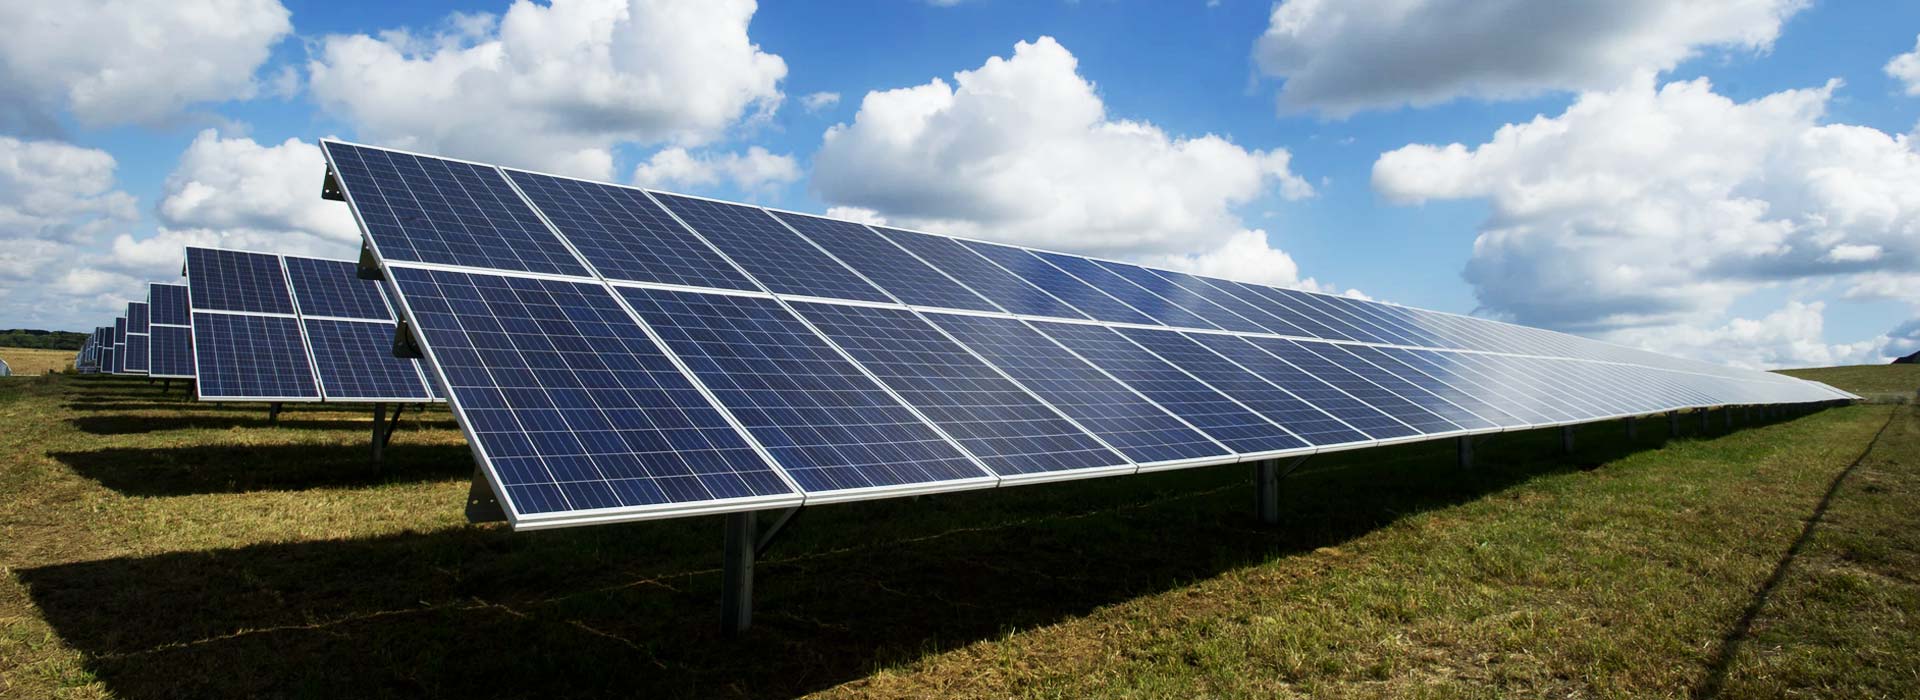 fotovoltaico-solar-panel-clima-service-di-fabbian-matteo